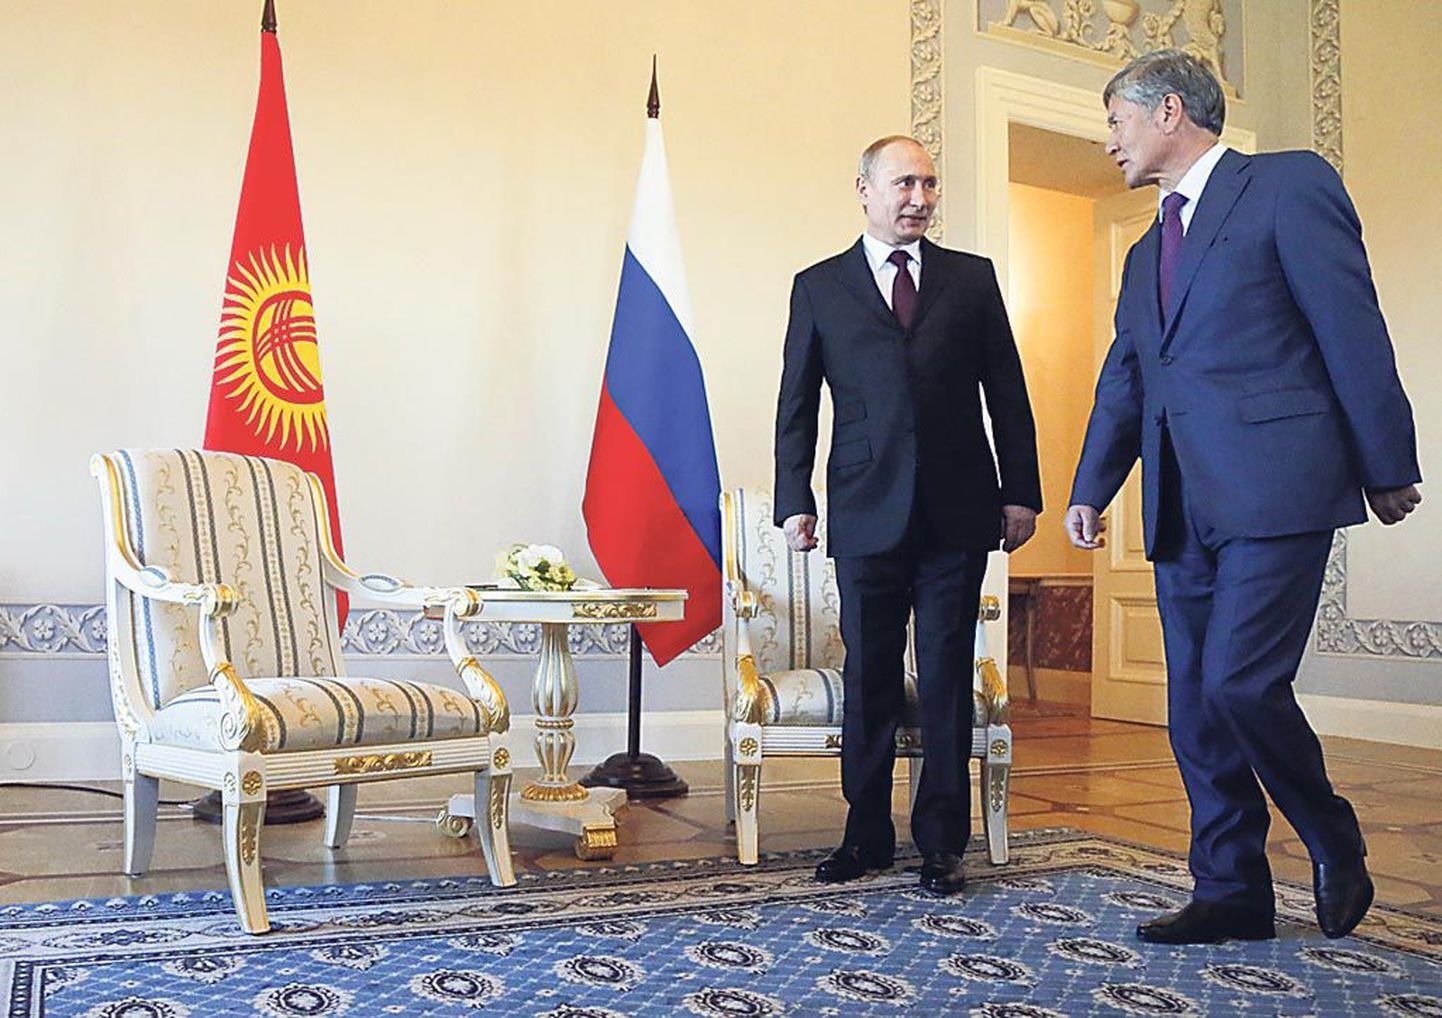 Kõrgõzstani president pidi oma toolini jõudmiseks mööduma Putinist poolkaares.